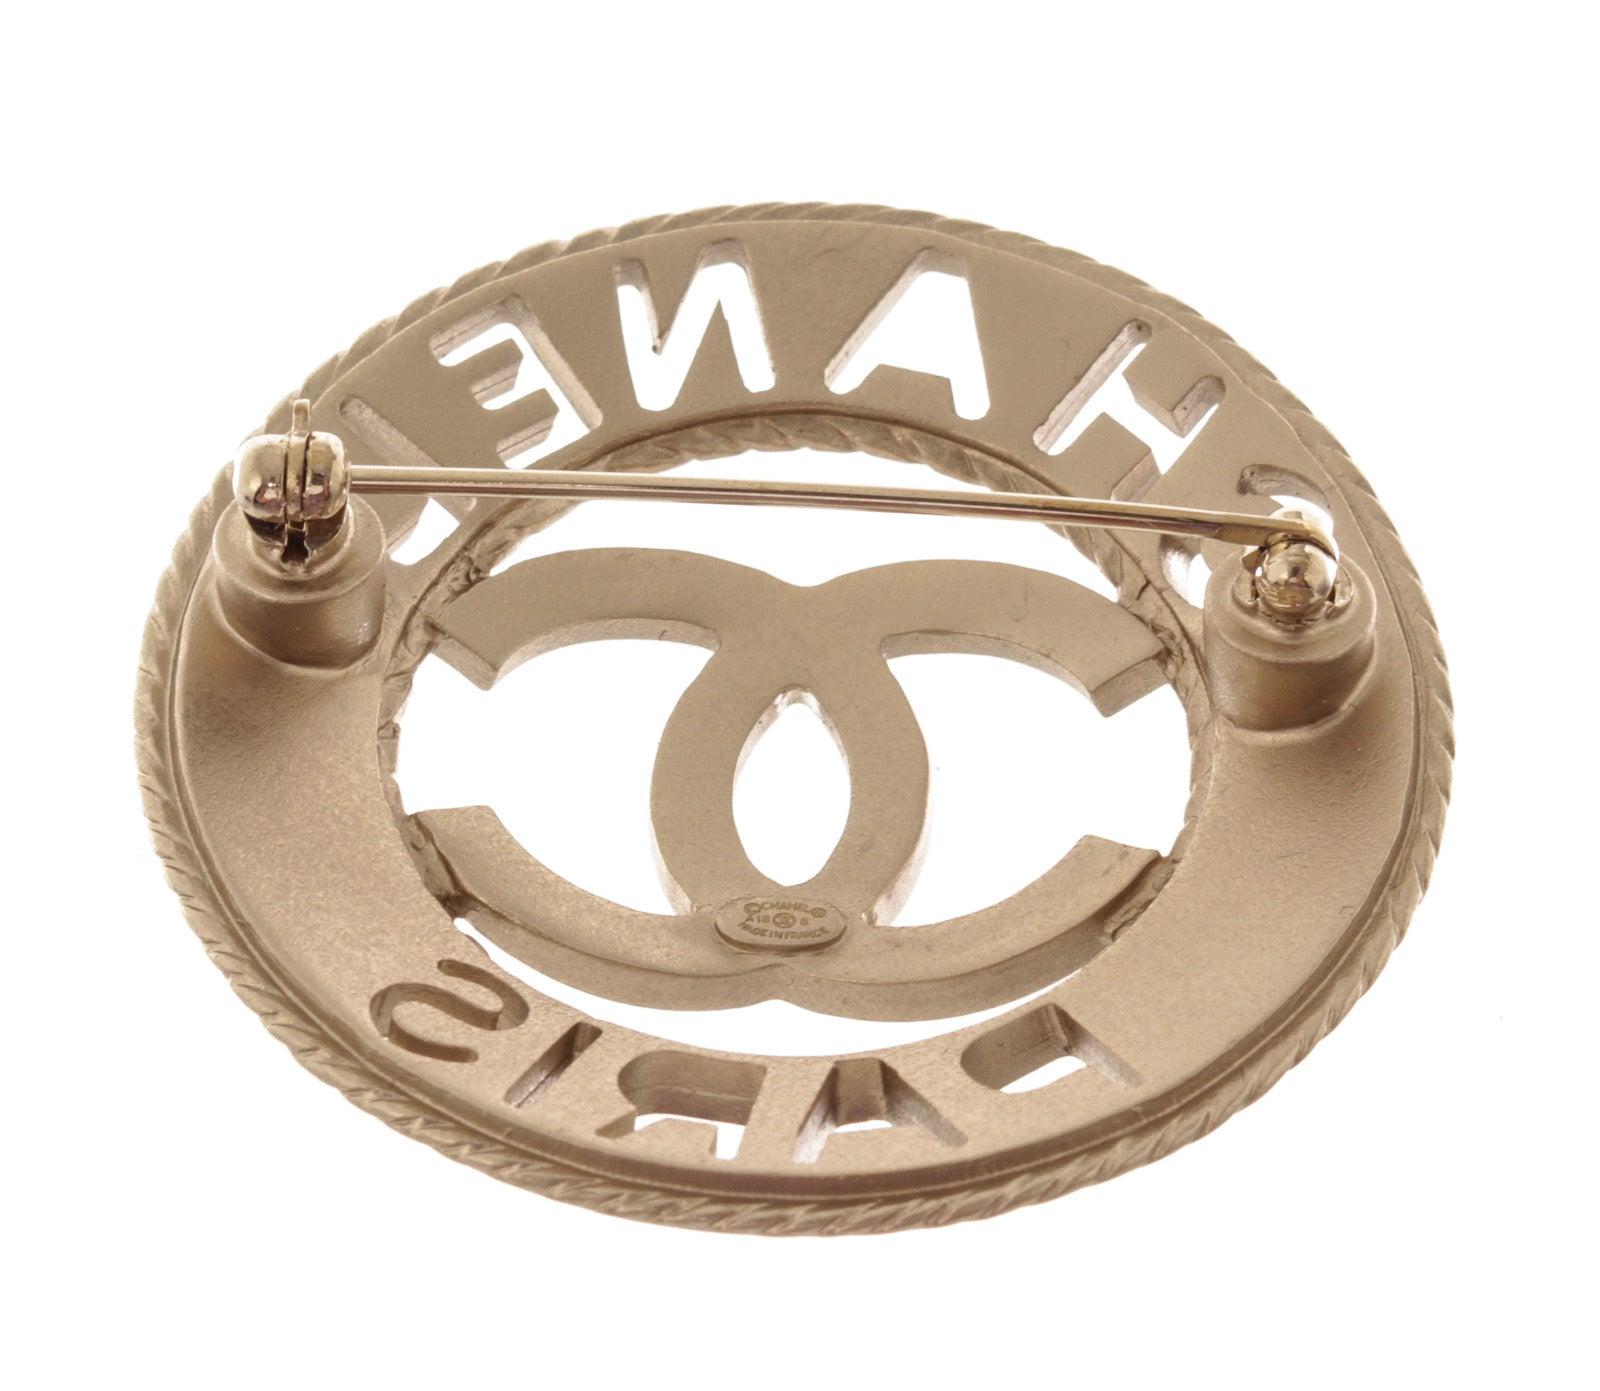 La broche ronde CC Paris de Chanel en métal argenté présente le logo CC entrelacé au centre et le matériel argenté.

54074MSC